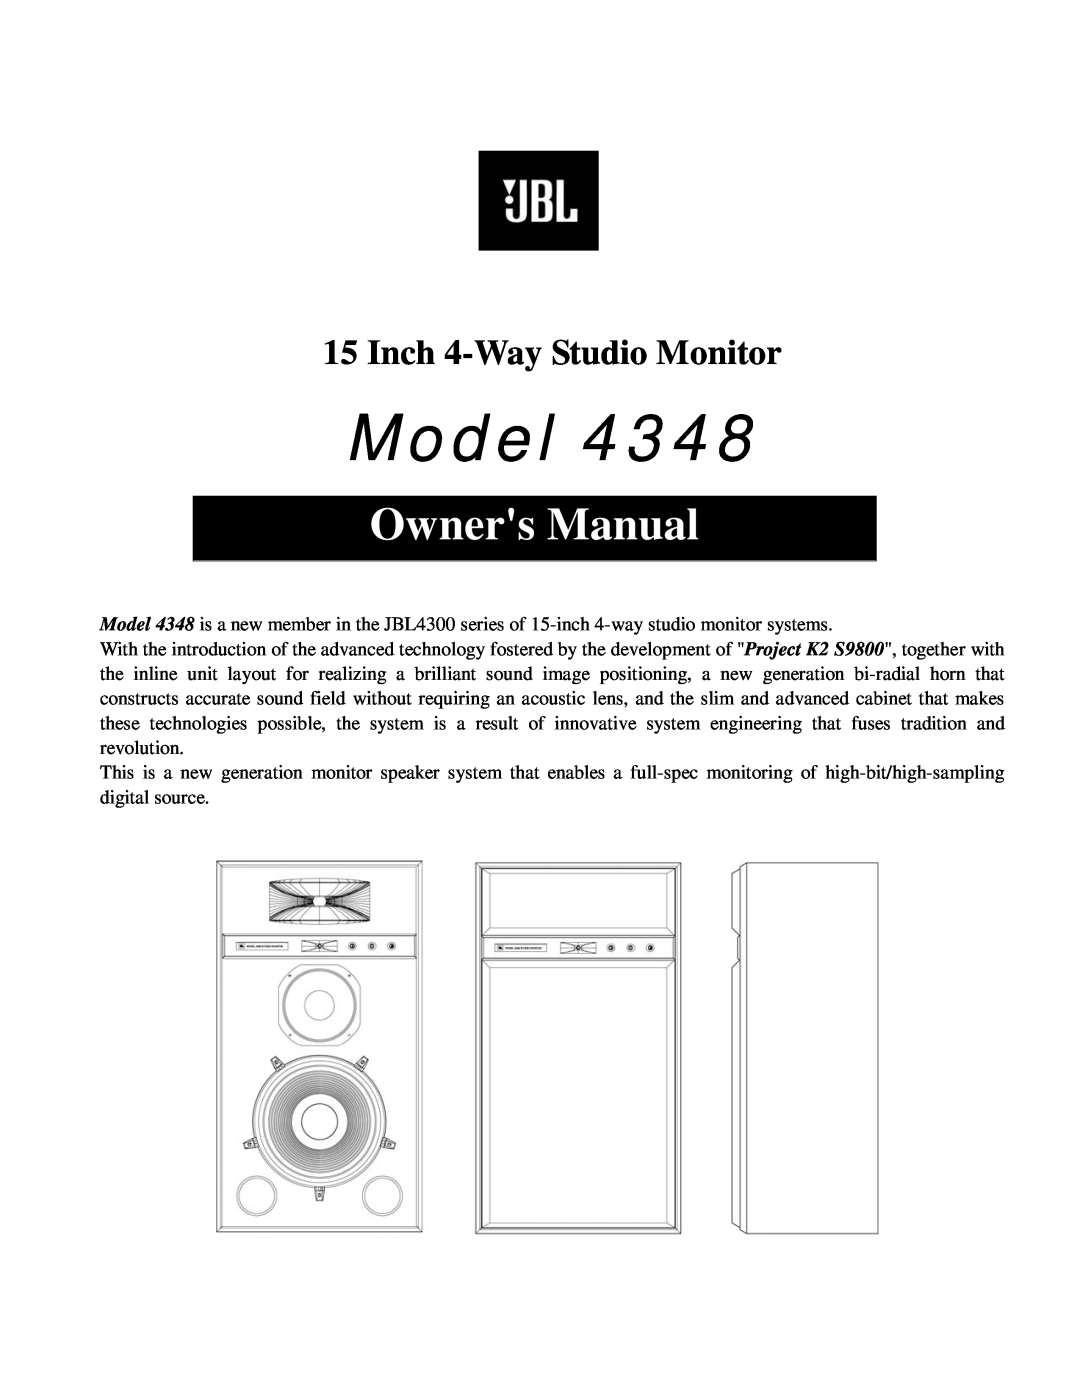 JBL 4348 owner manual Model, Owners Manual, Inch 4-Way Studio Monitor 